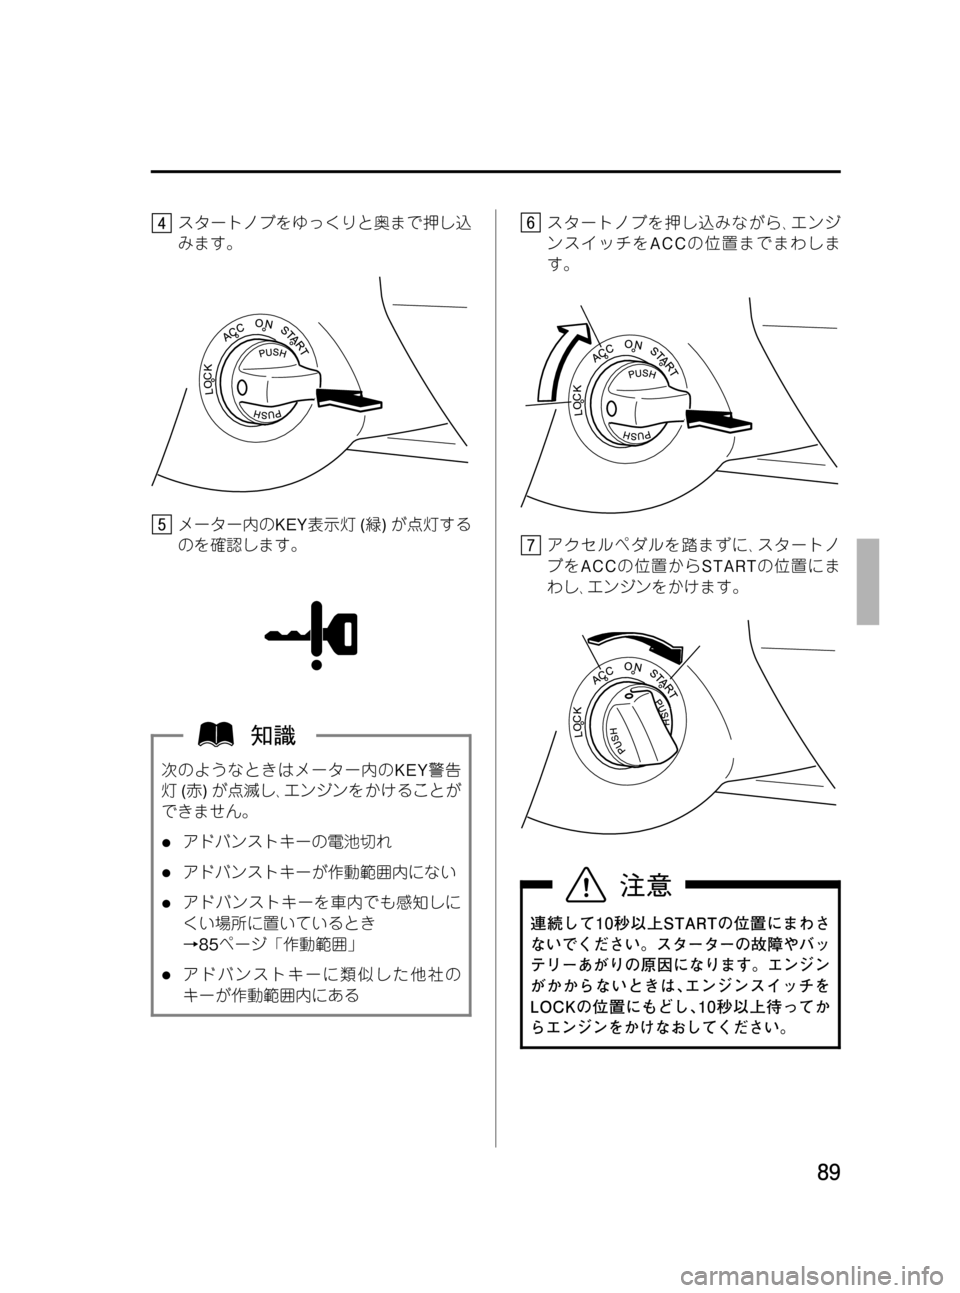 MAZDA MODEL RX 8 2008  取扱説明書 (in Japanese) Black plate (89,1)
スタートノブをゆっくりと奥まで押し込
みます。
メーター内のKEY表示灯(緑)が点灯する
のを確認します。
次のようなときはメーター�